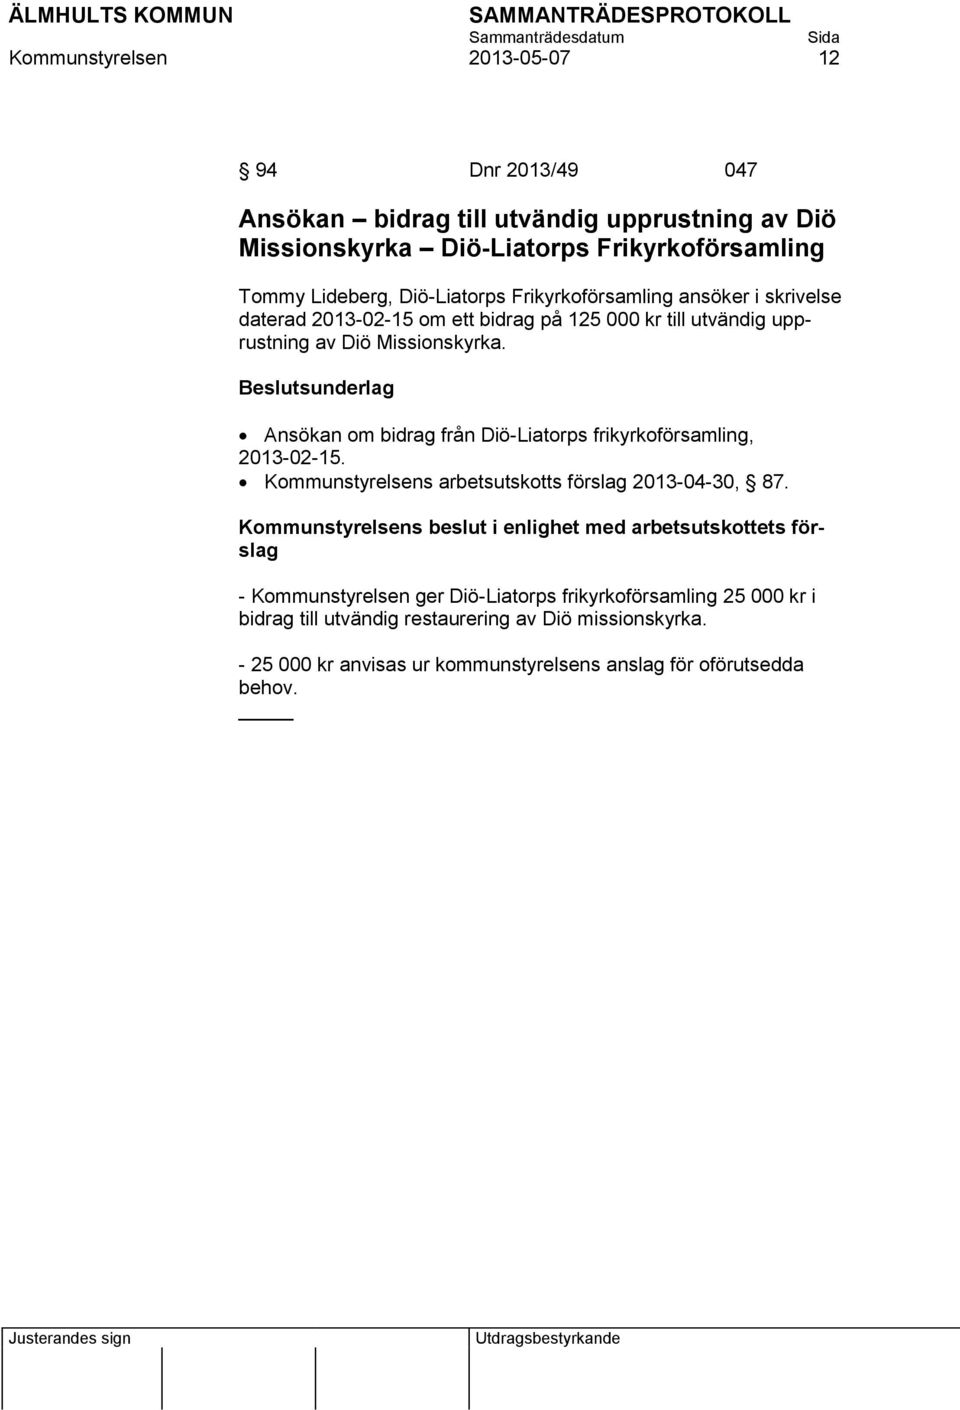 Ansökan om bidrag från Diö-Liatorps frikyrkoförsamling, 2013-02-15. Kommunstyrelsens arbetsutskotts förslag 2013-04-30, 87.